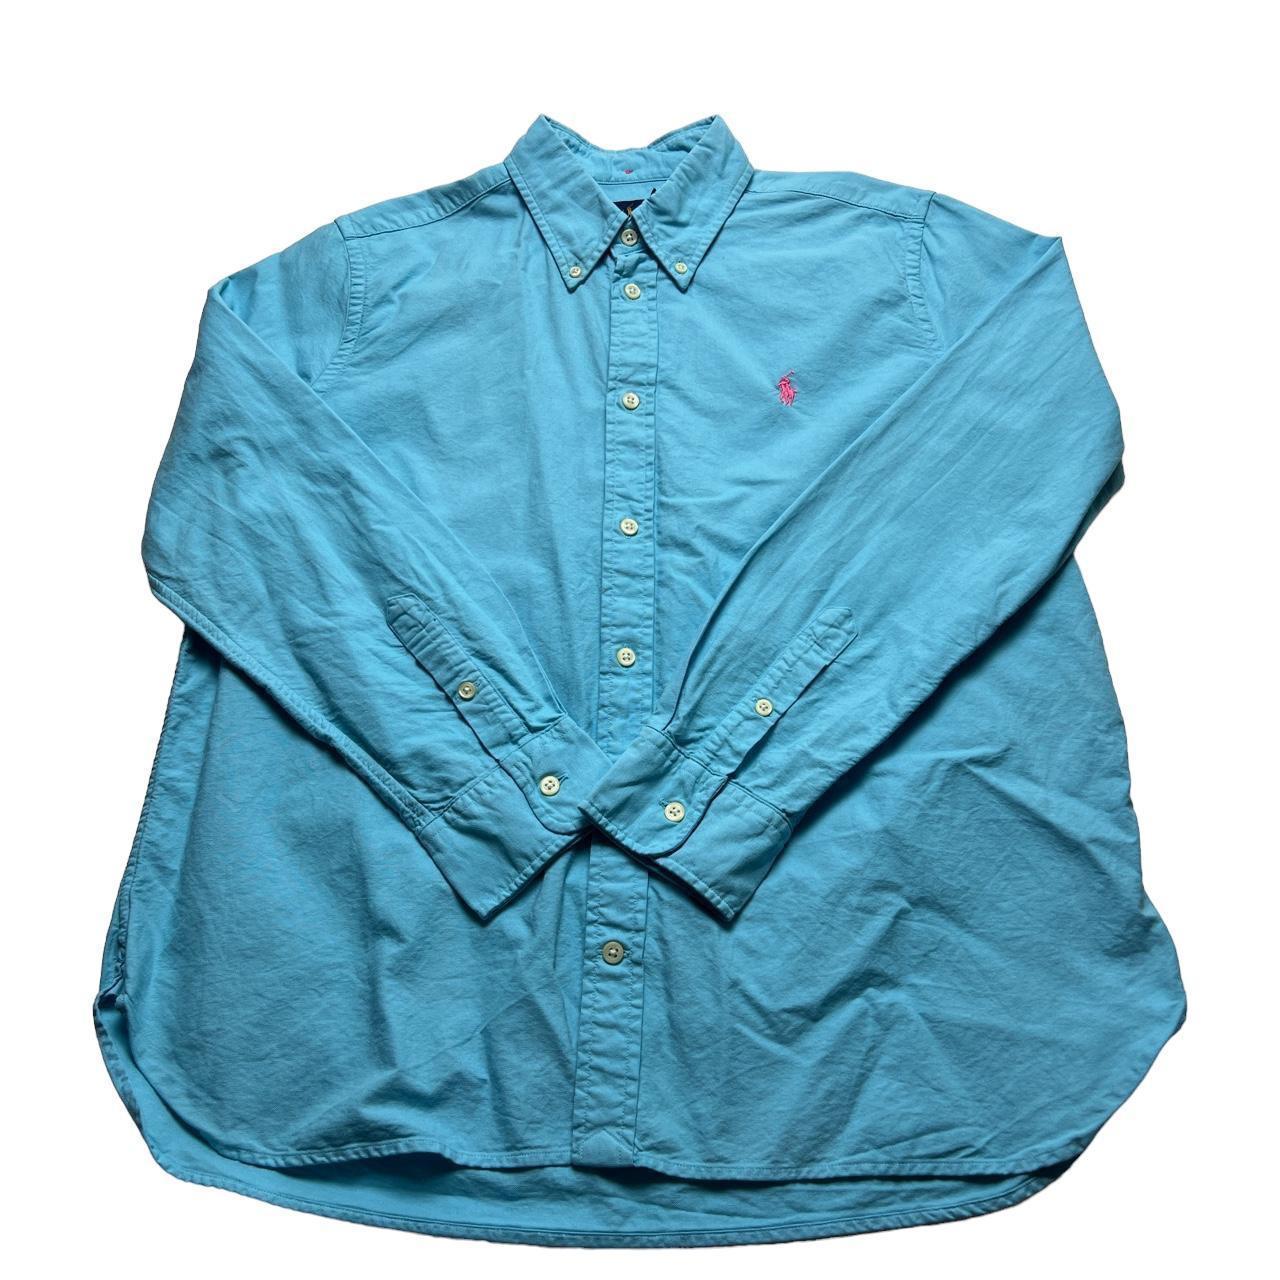 Ralph Lauren women's shirt xl blue - Depop